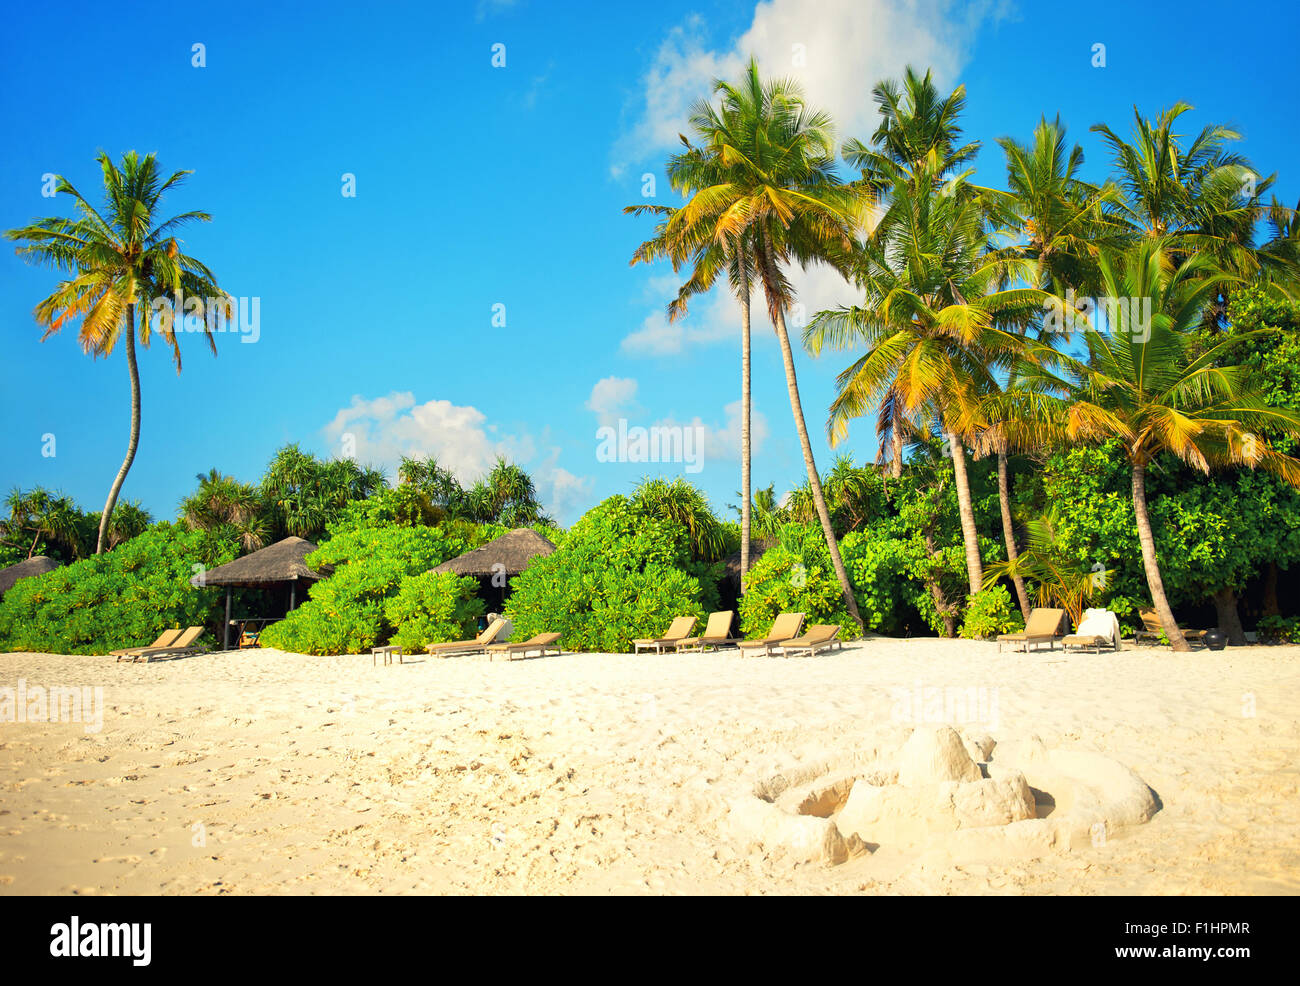 Plage de sable avec des palmiers et ciel bleu. Jours fériés l'arrière-plan. Tons style vintage photo Banque D'Images